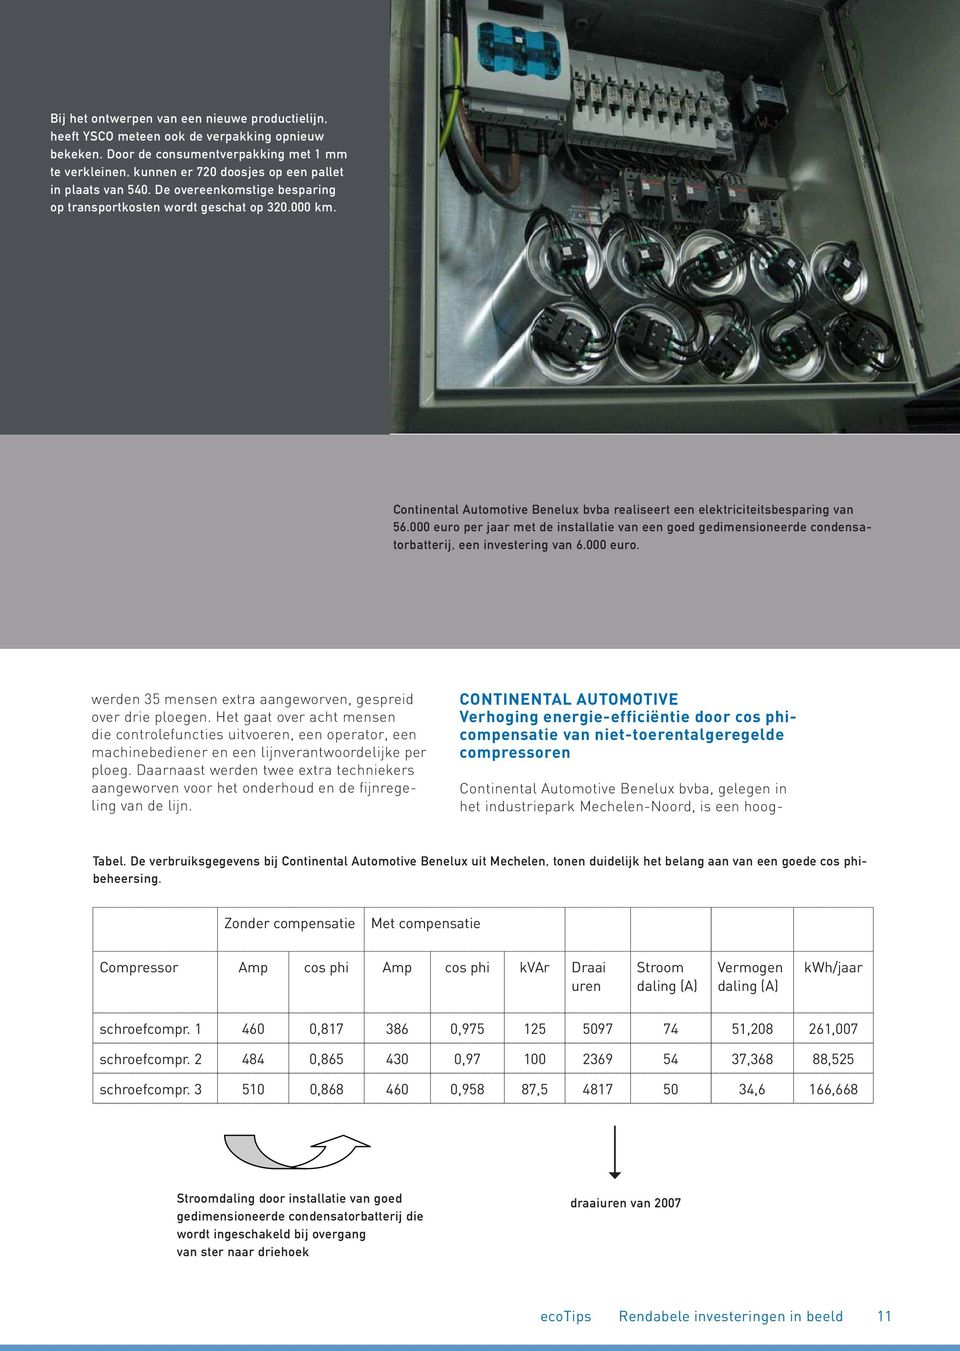 Continental Automotive Benelux bvba realiseert een elektriciteitsbesparing van 56.000 euro per jaar met de installatie van een goed gedimensioneerde condensatorbatterij, een investering van 6.